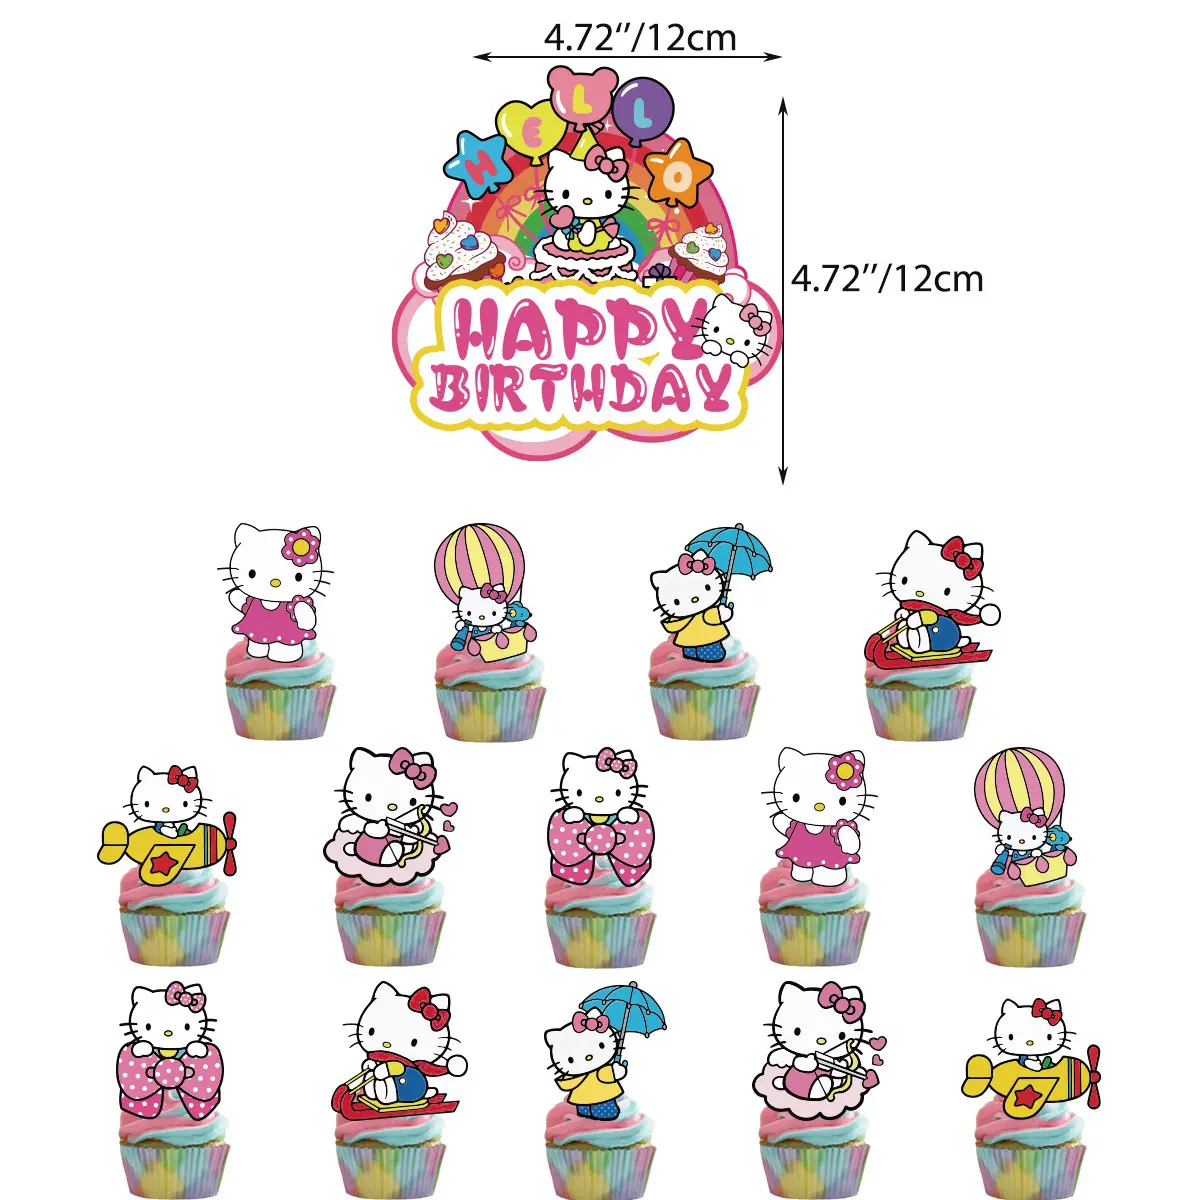 Personalizado Cupcake Postre Desechable Diy Papel Dibujos animados Gatito Gato Cake Stand Set Display Rack Herramientas Signo Fiesta de Cumpleaños Decoración